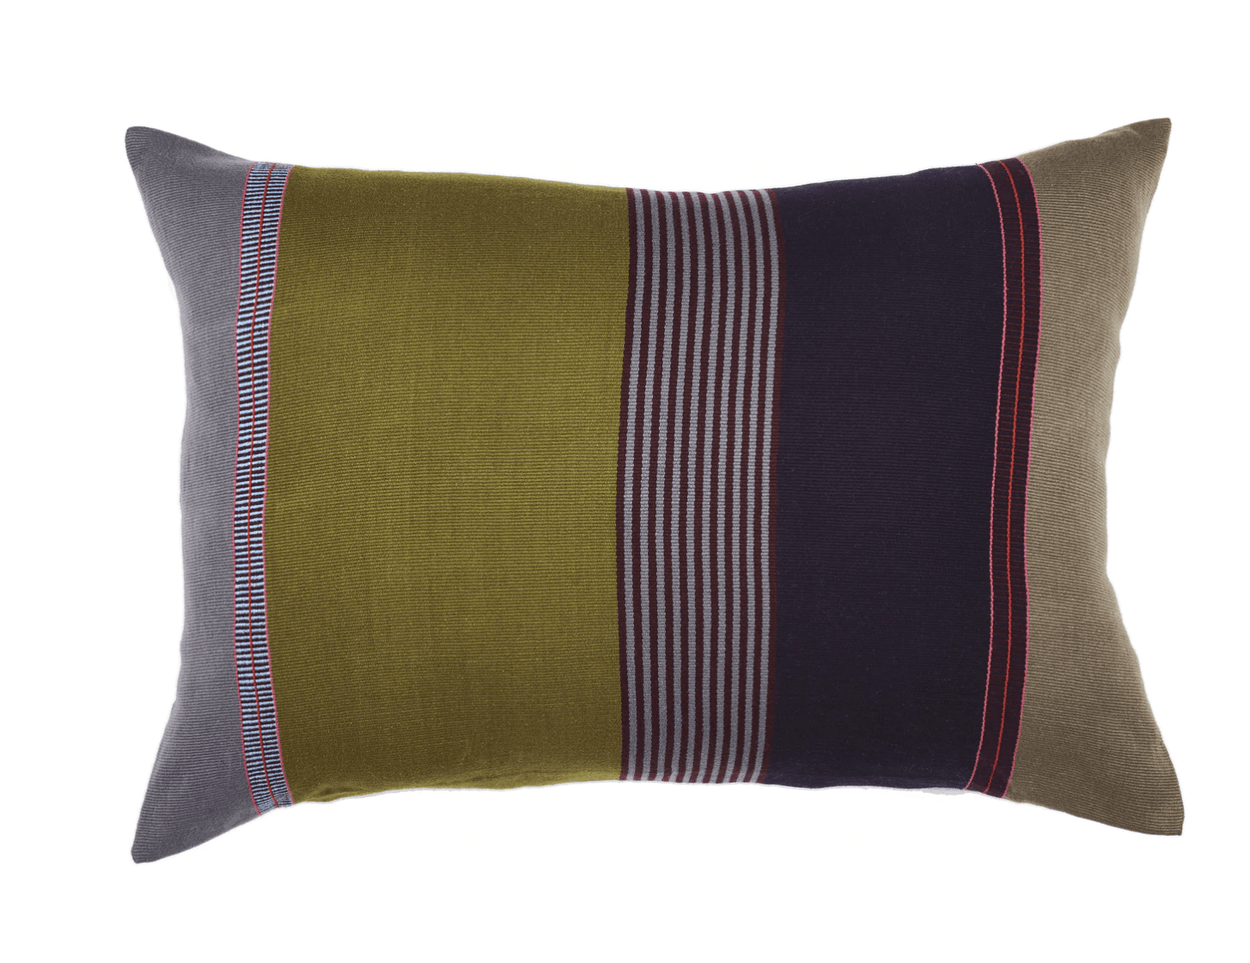 Yox Lumbar Pillow Home, textile, Pillow Covers El Camino de los Altos 